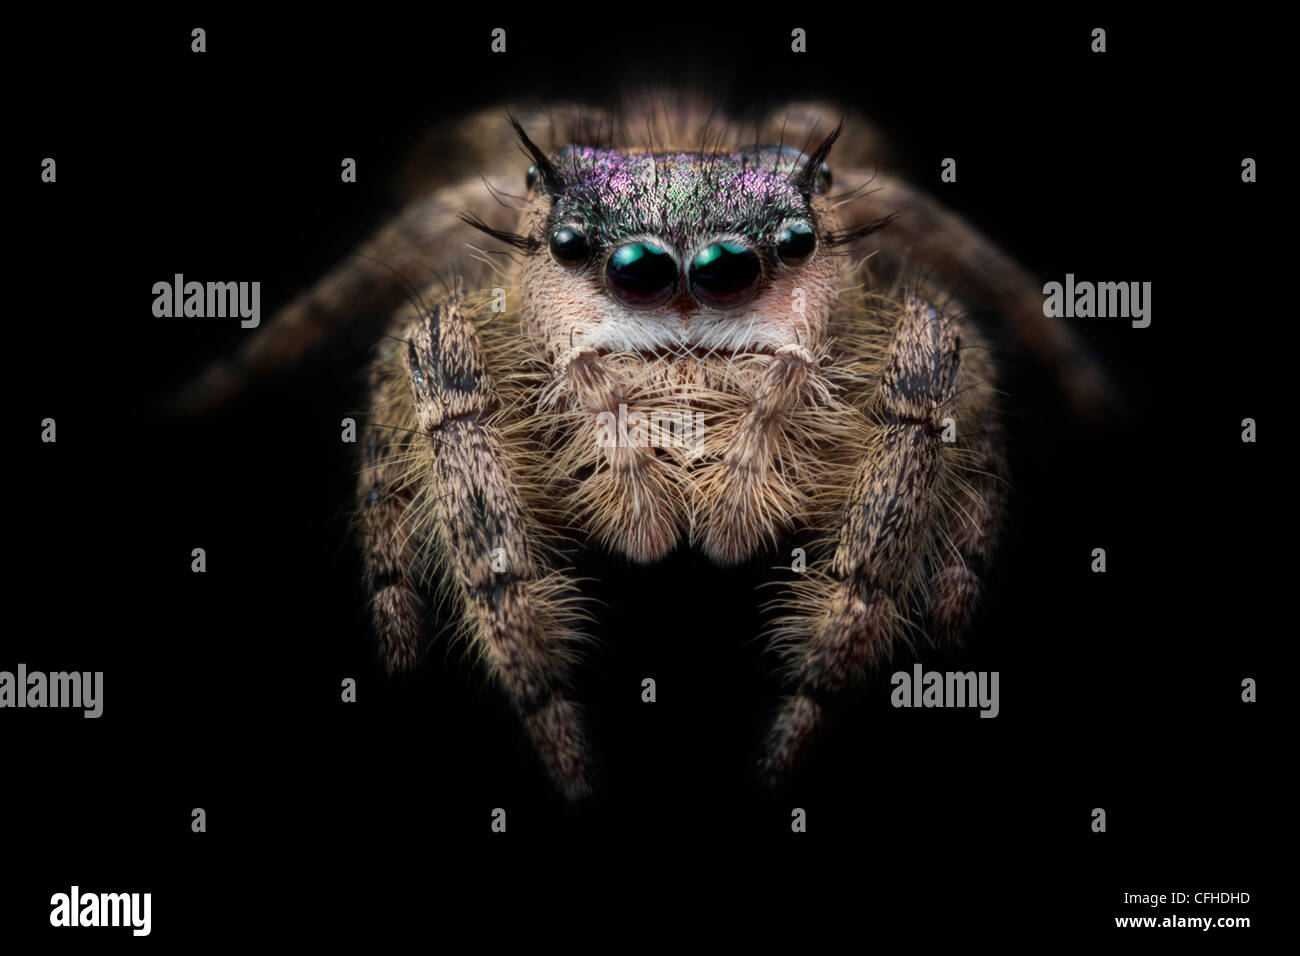 La tettoia Jumping Spider femmina, captive, originari del Nord America. Fotografato sul velluto nero. Dimensioni < 1 cm Foto Stock